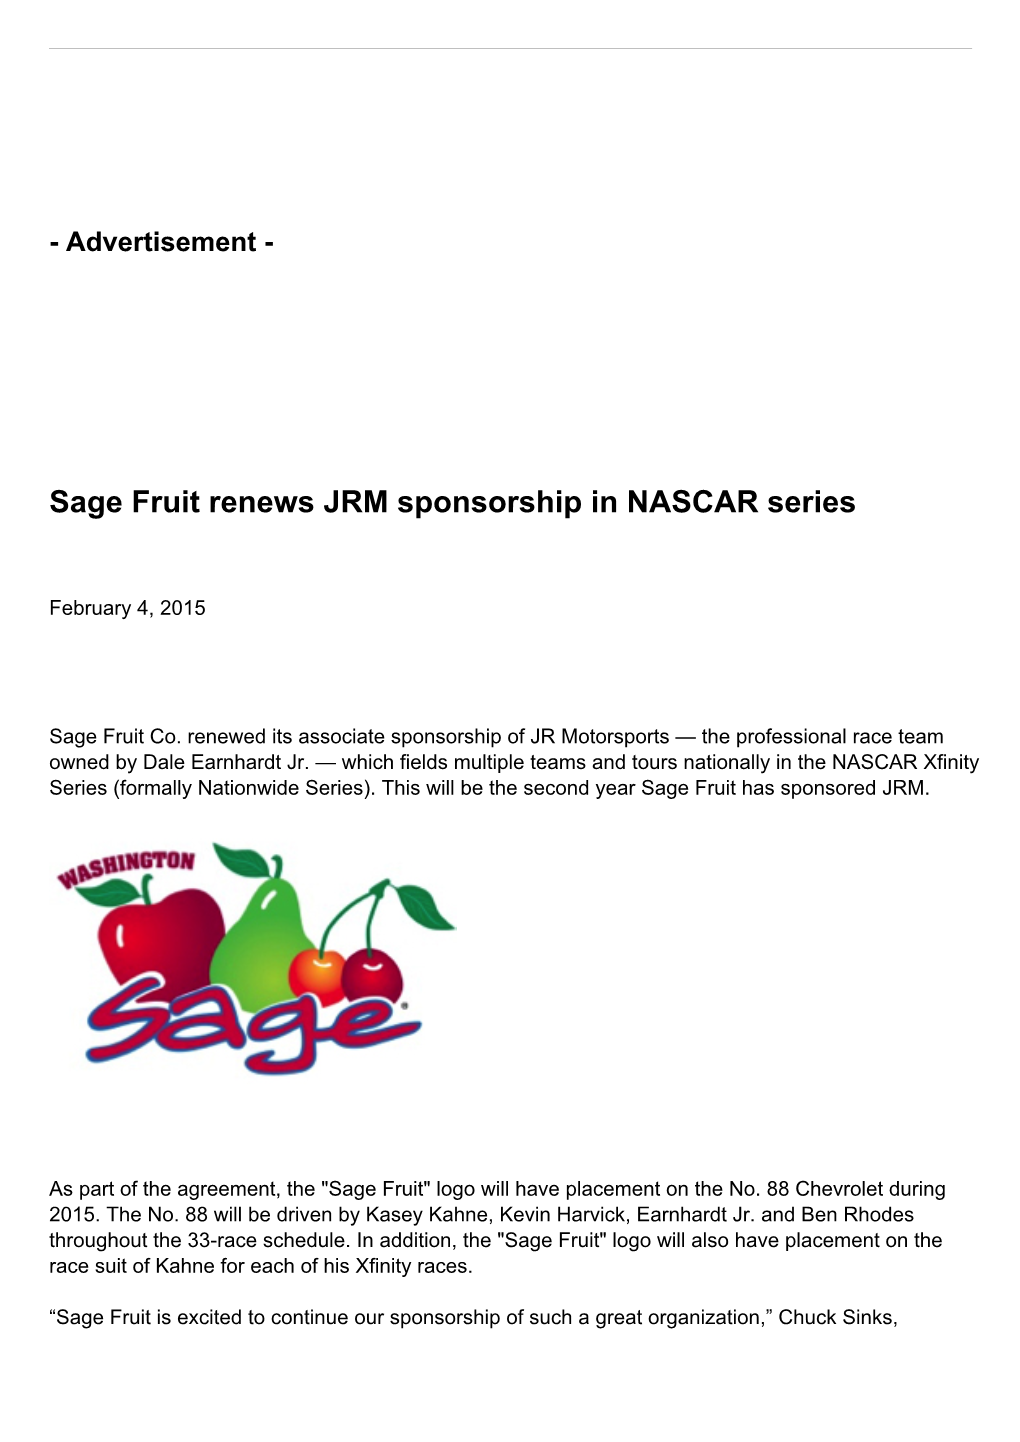 Sage Fruit Renews JRM Sponsorship in NASCAR Series